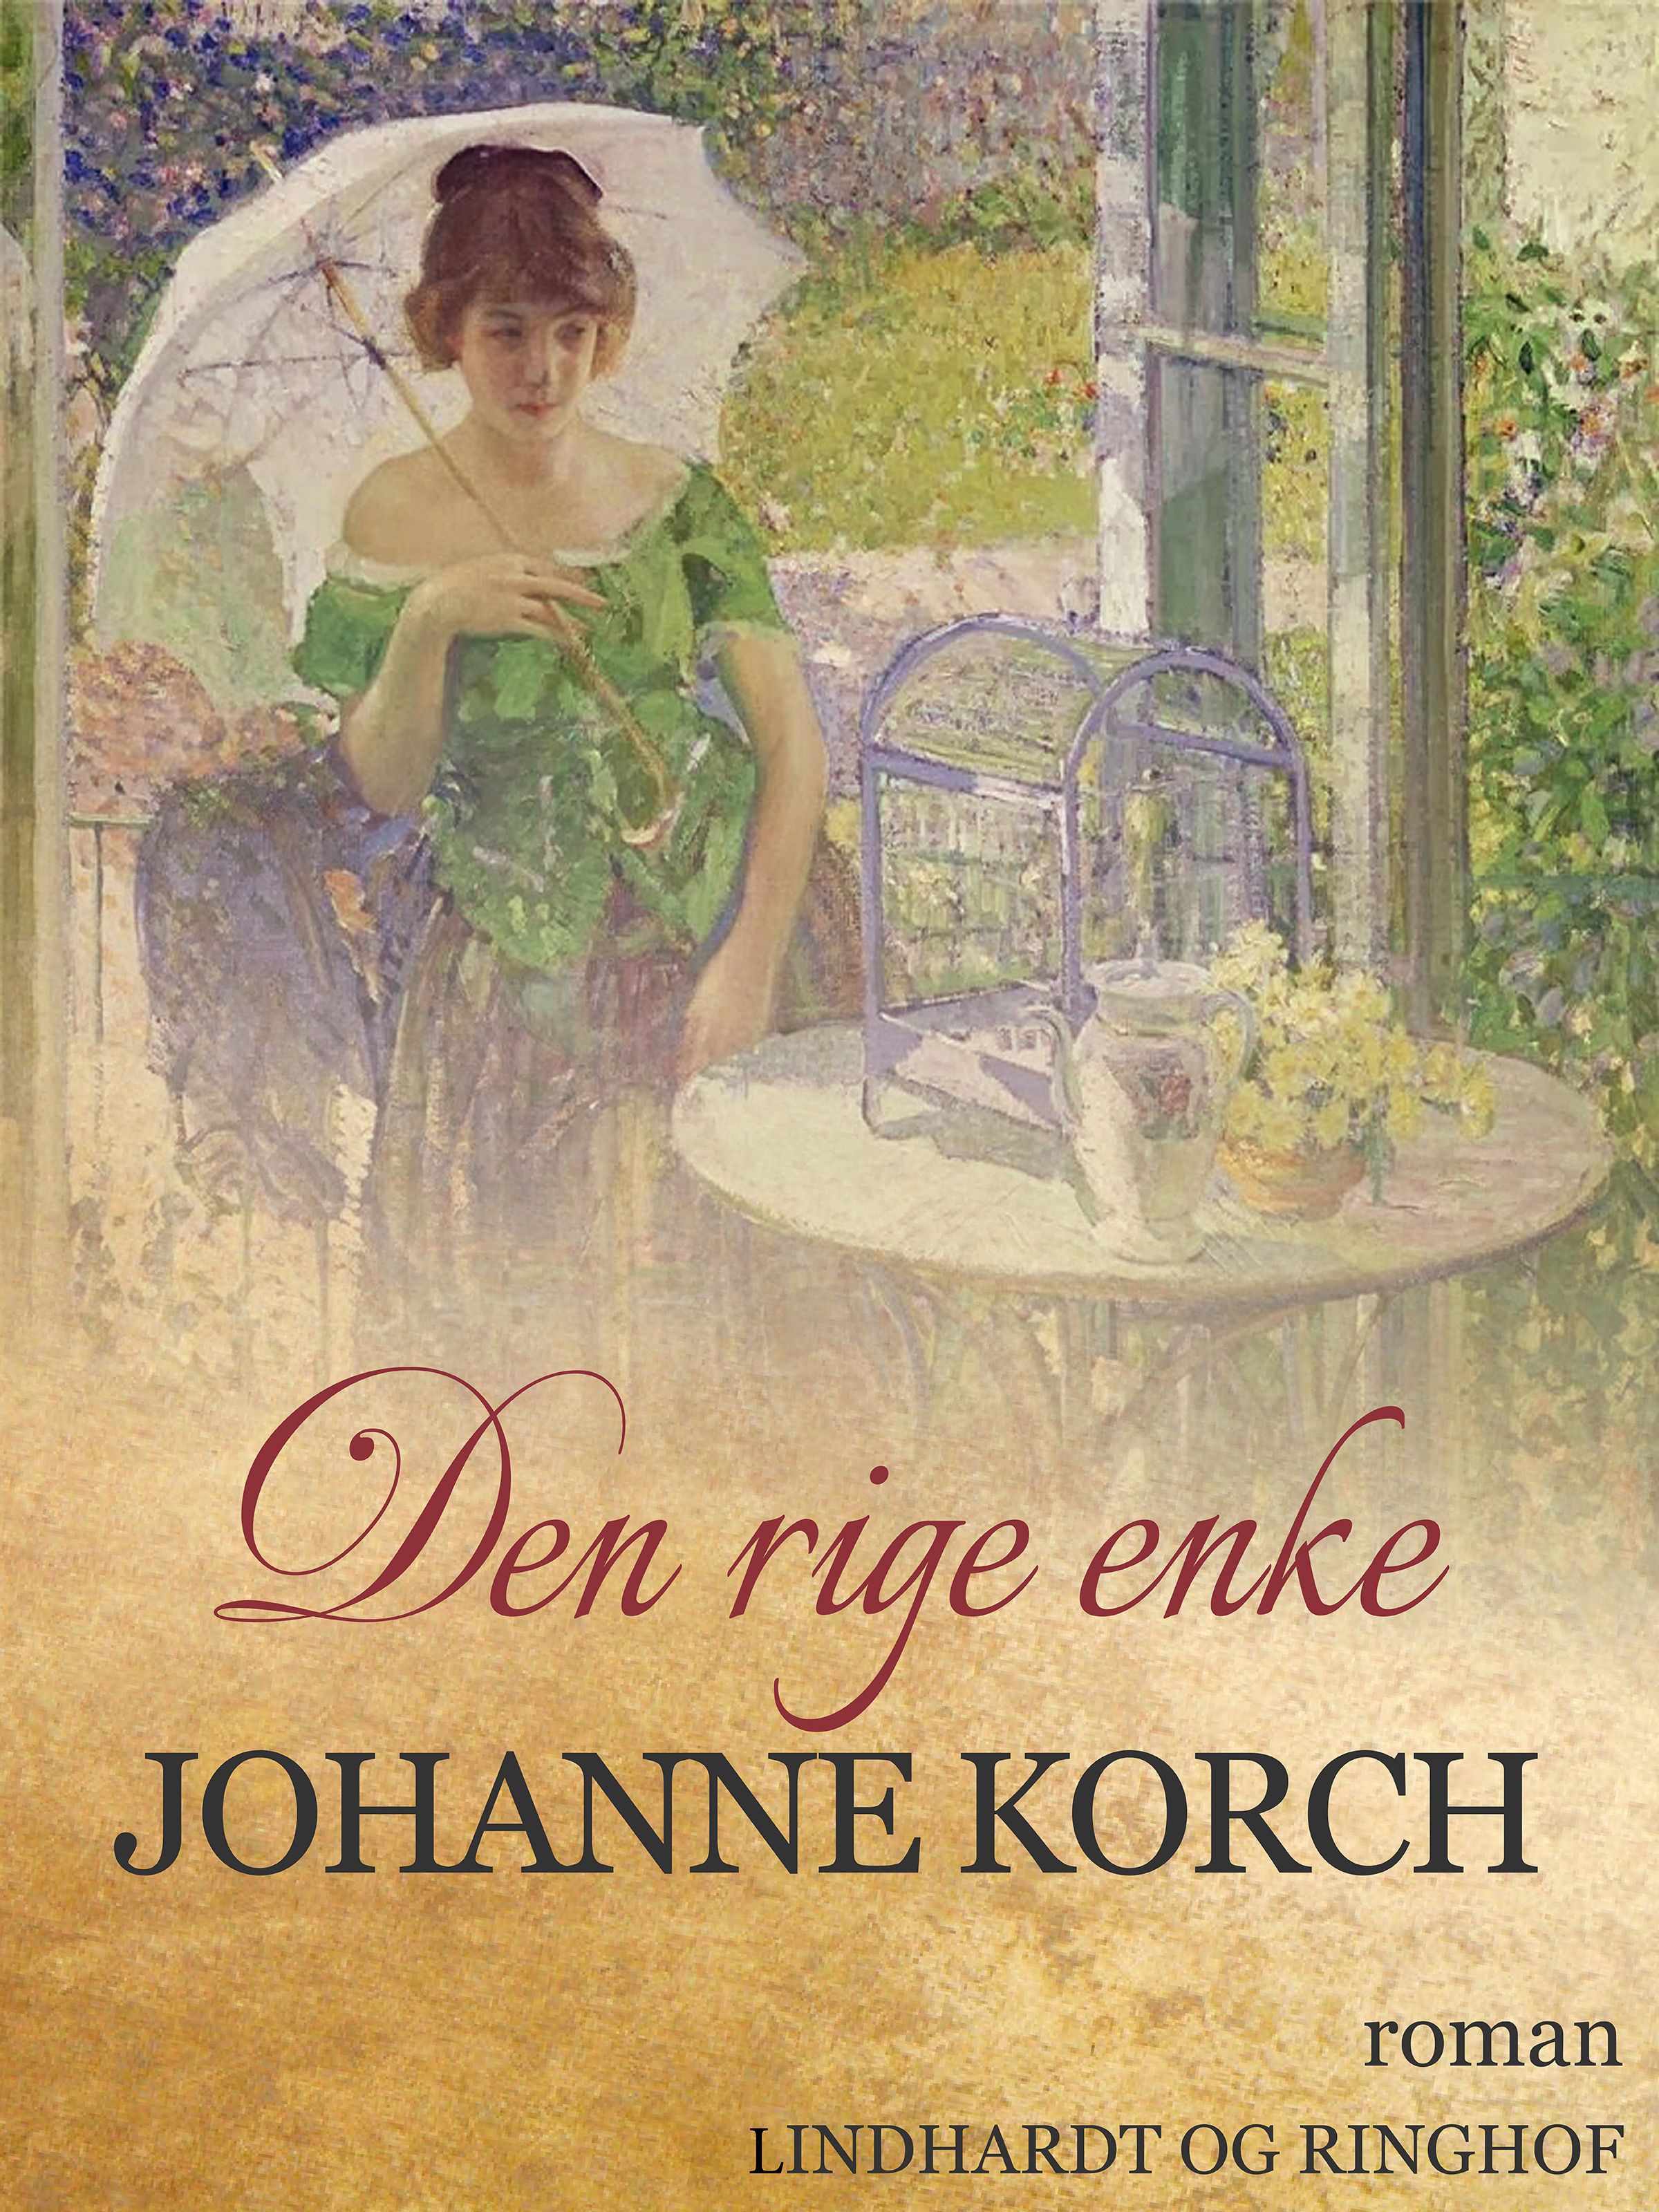 Den rige enke, audiobook by Johanne Korch